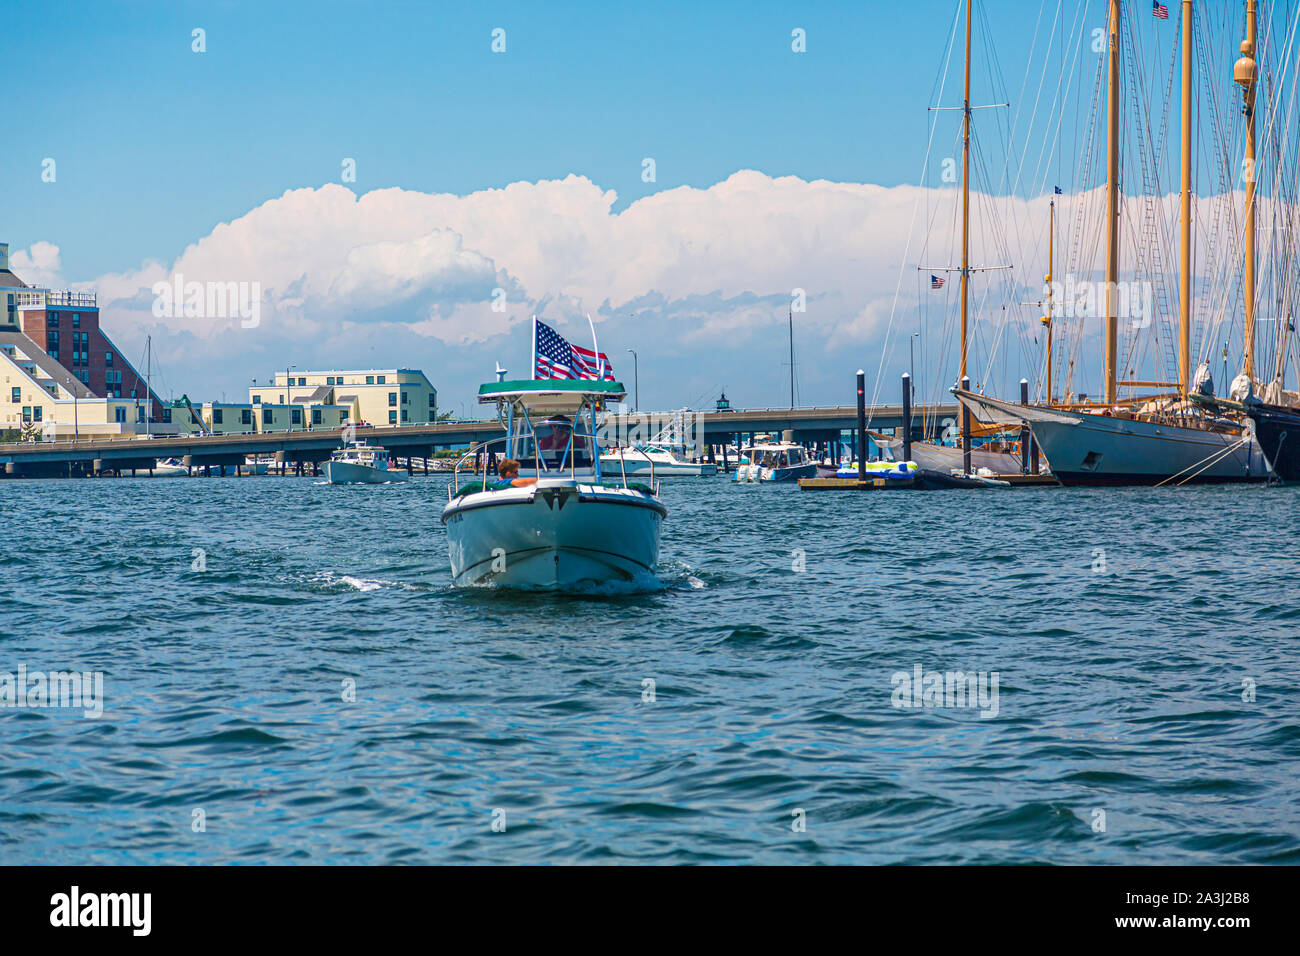 NEWPORT, Rhode Island - Luglio 8, 2017: Newport è una città di mare nel Rhode Island, è noto come una Nuova Inghilterra summer resort ed è famosa per la sua hist Foto Stock